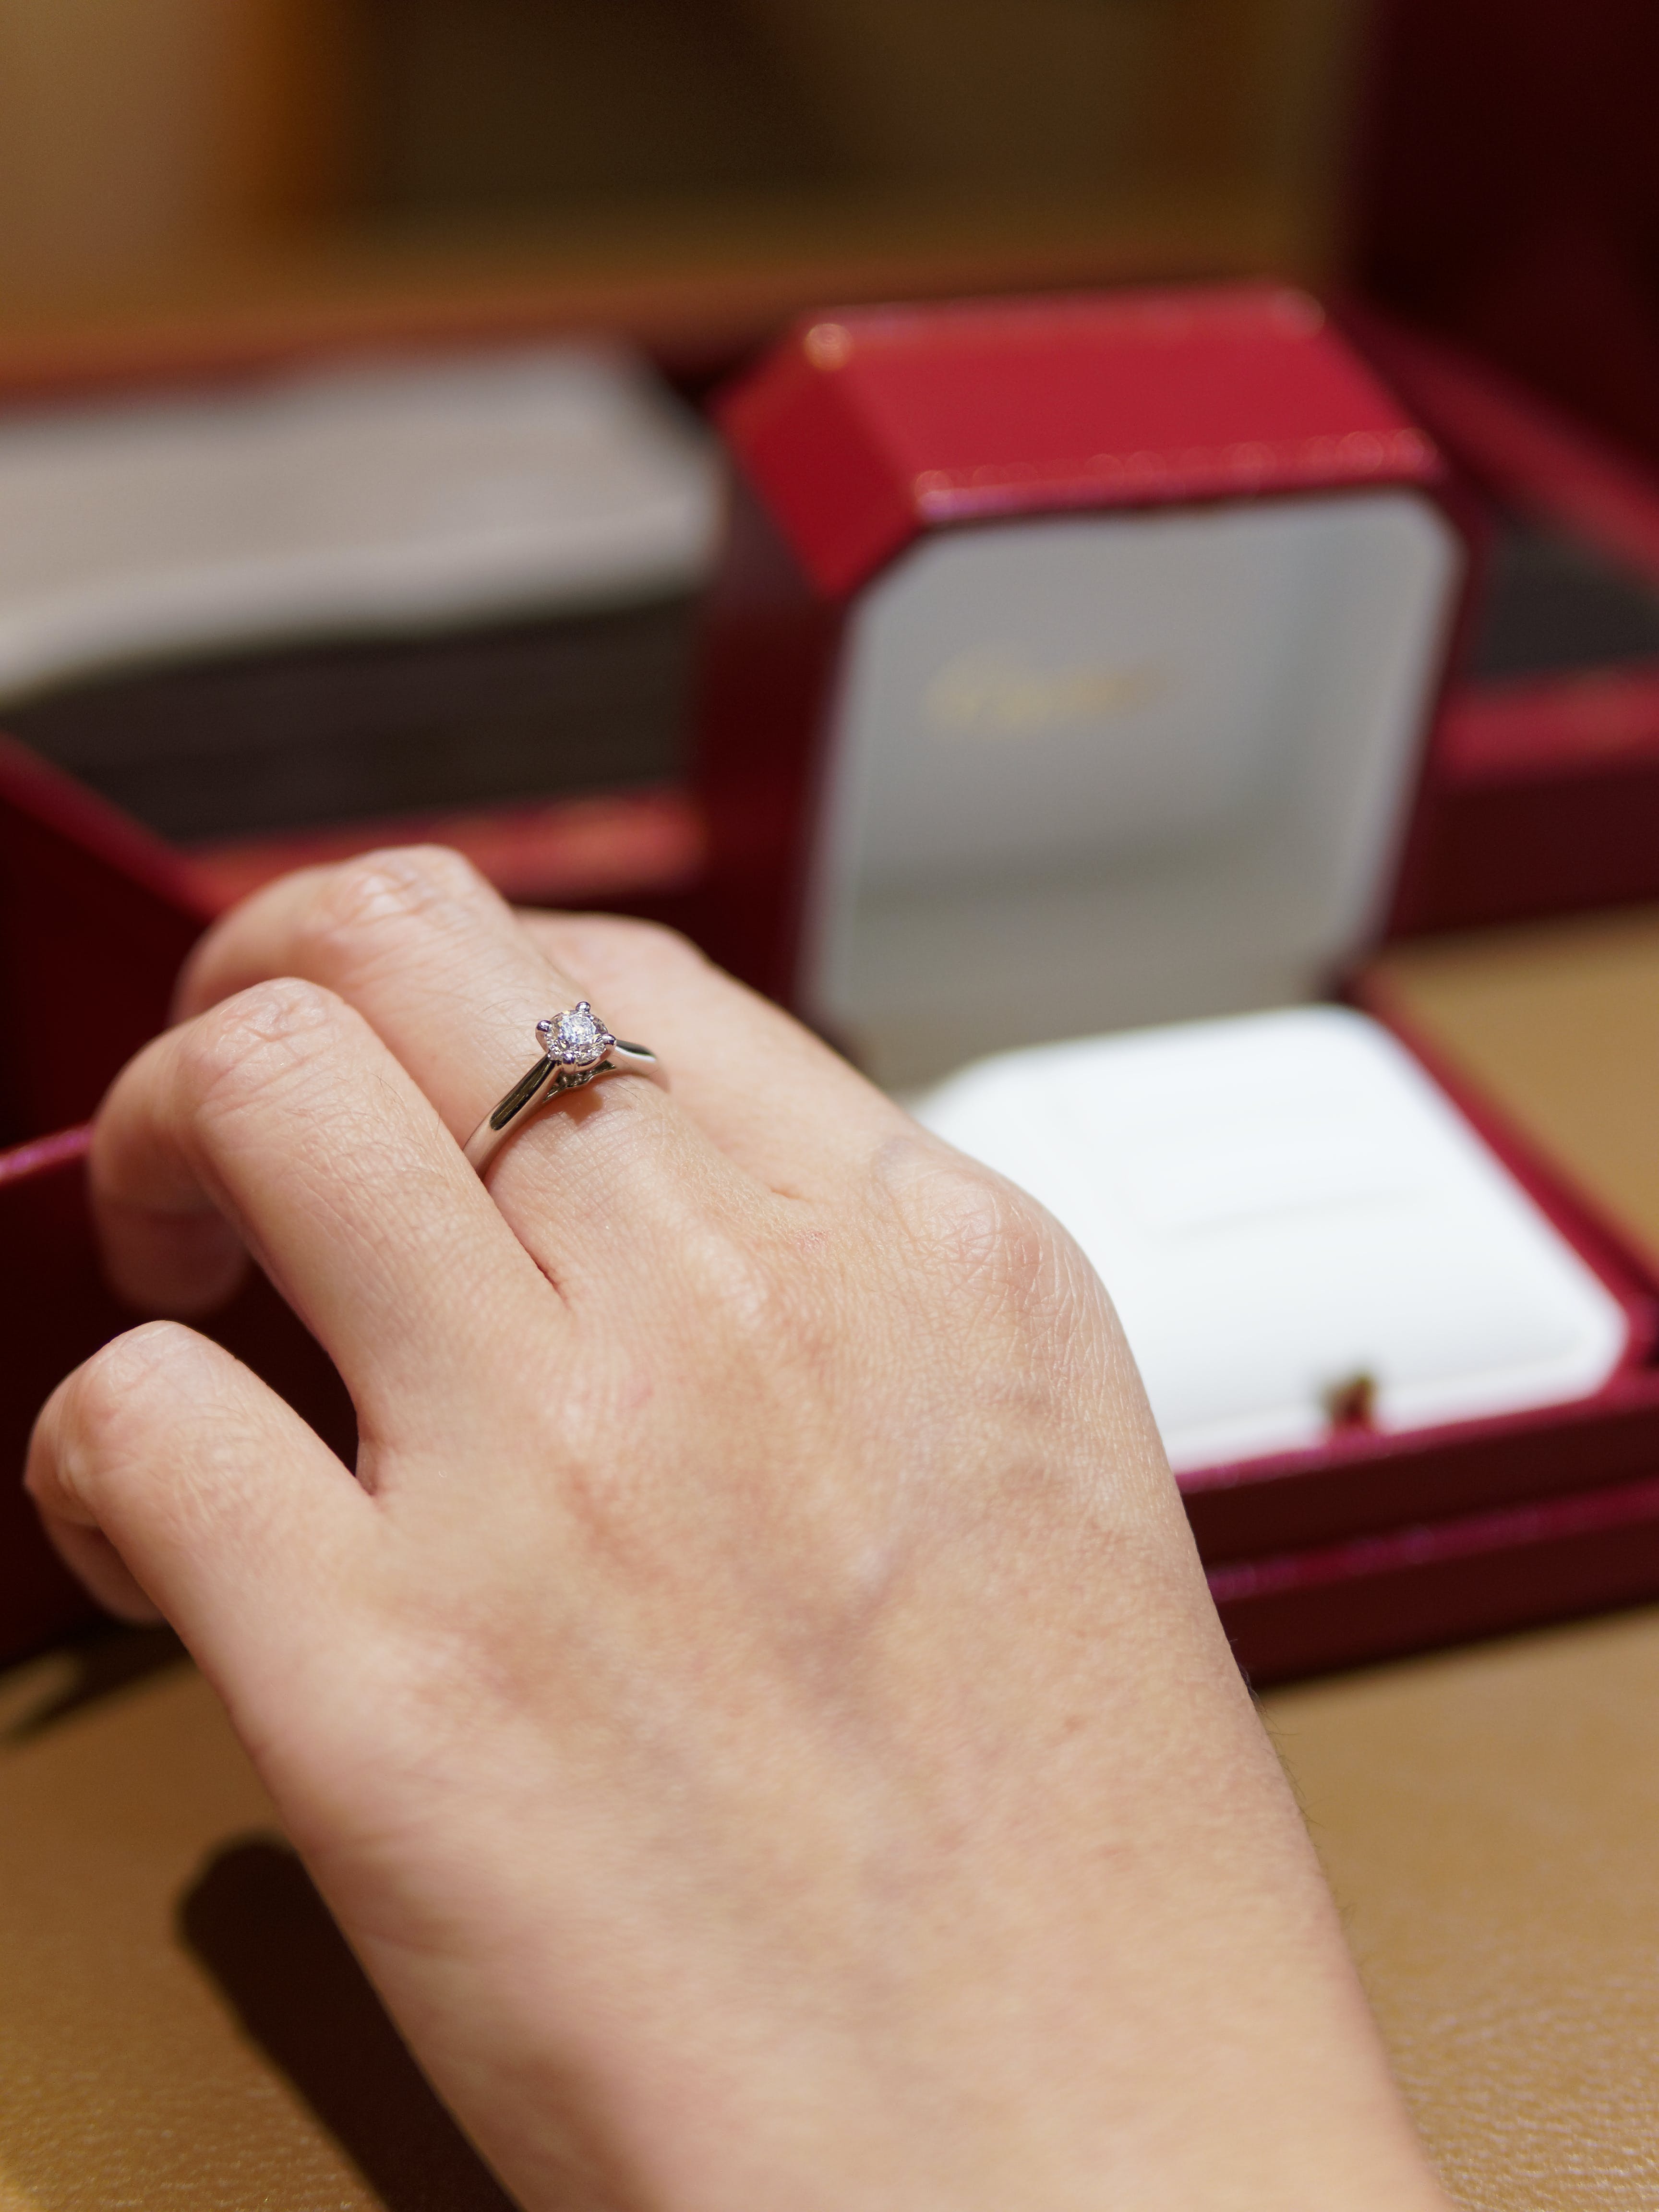 Una mano con un anillo de compromiso en el dedo equivocado | Foto: Pexels